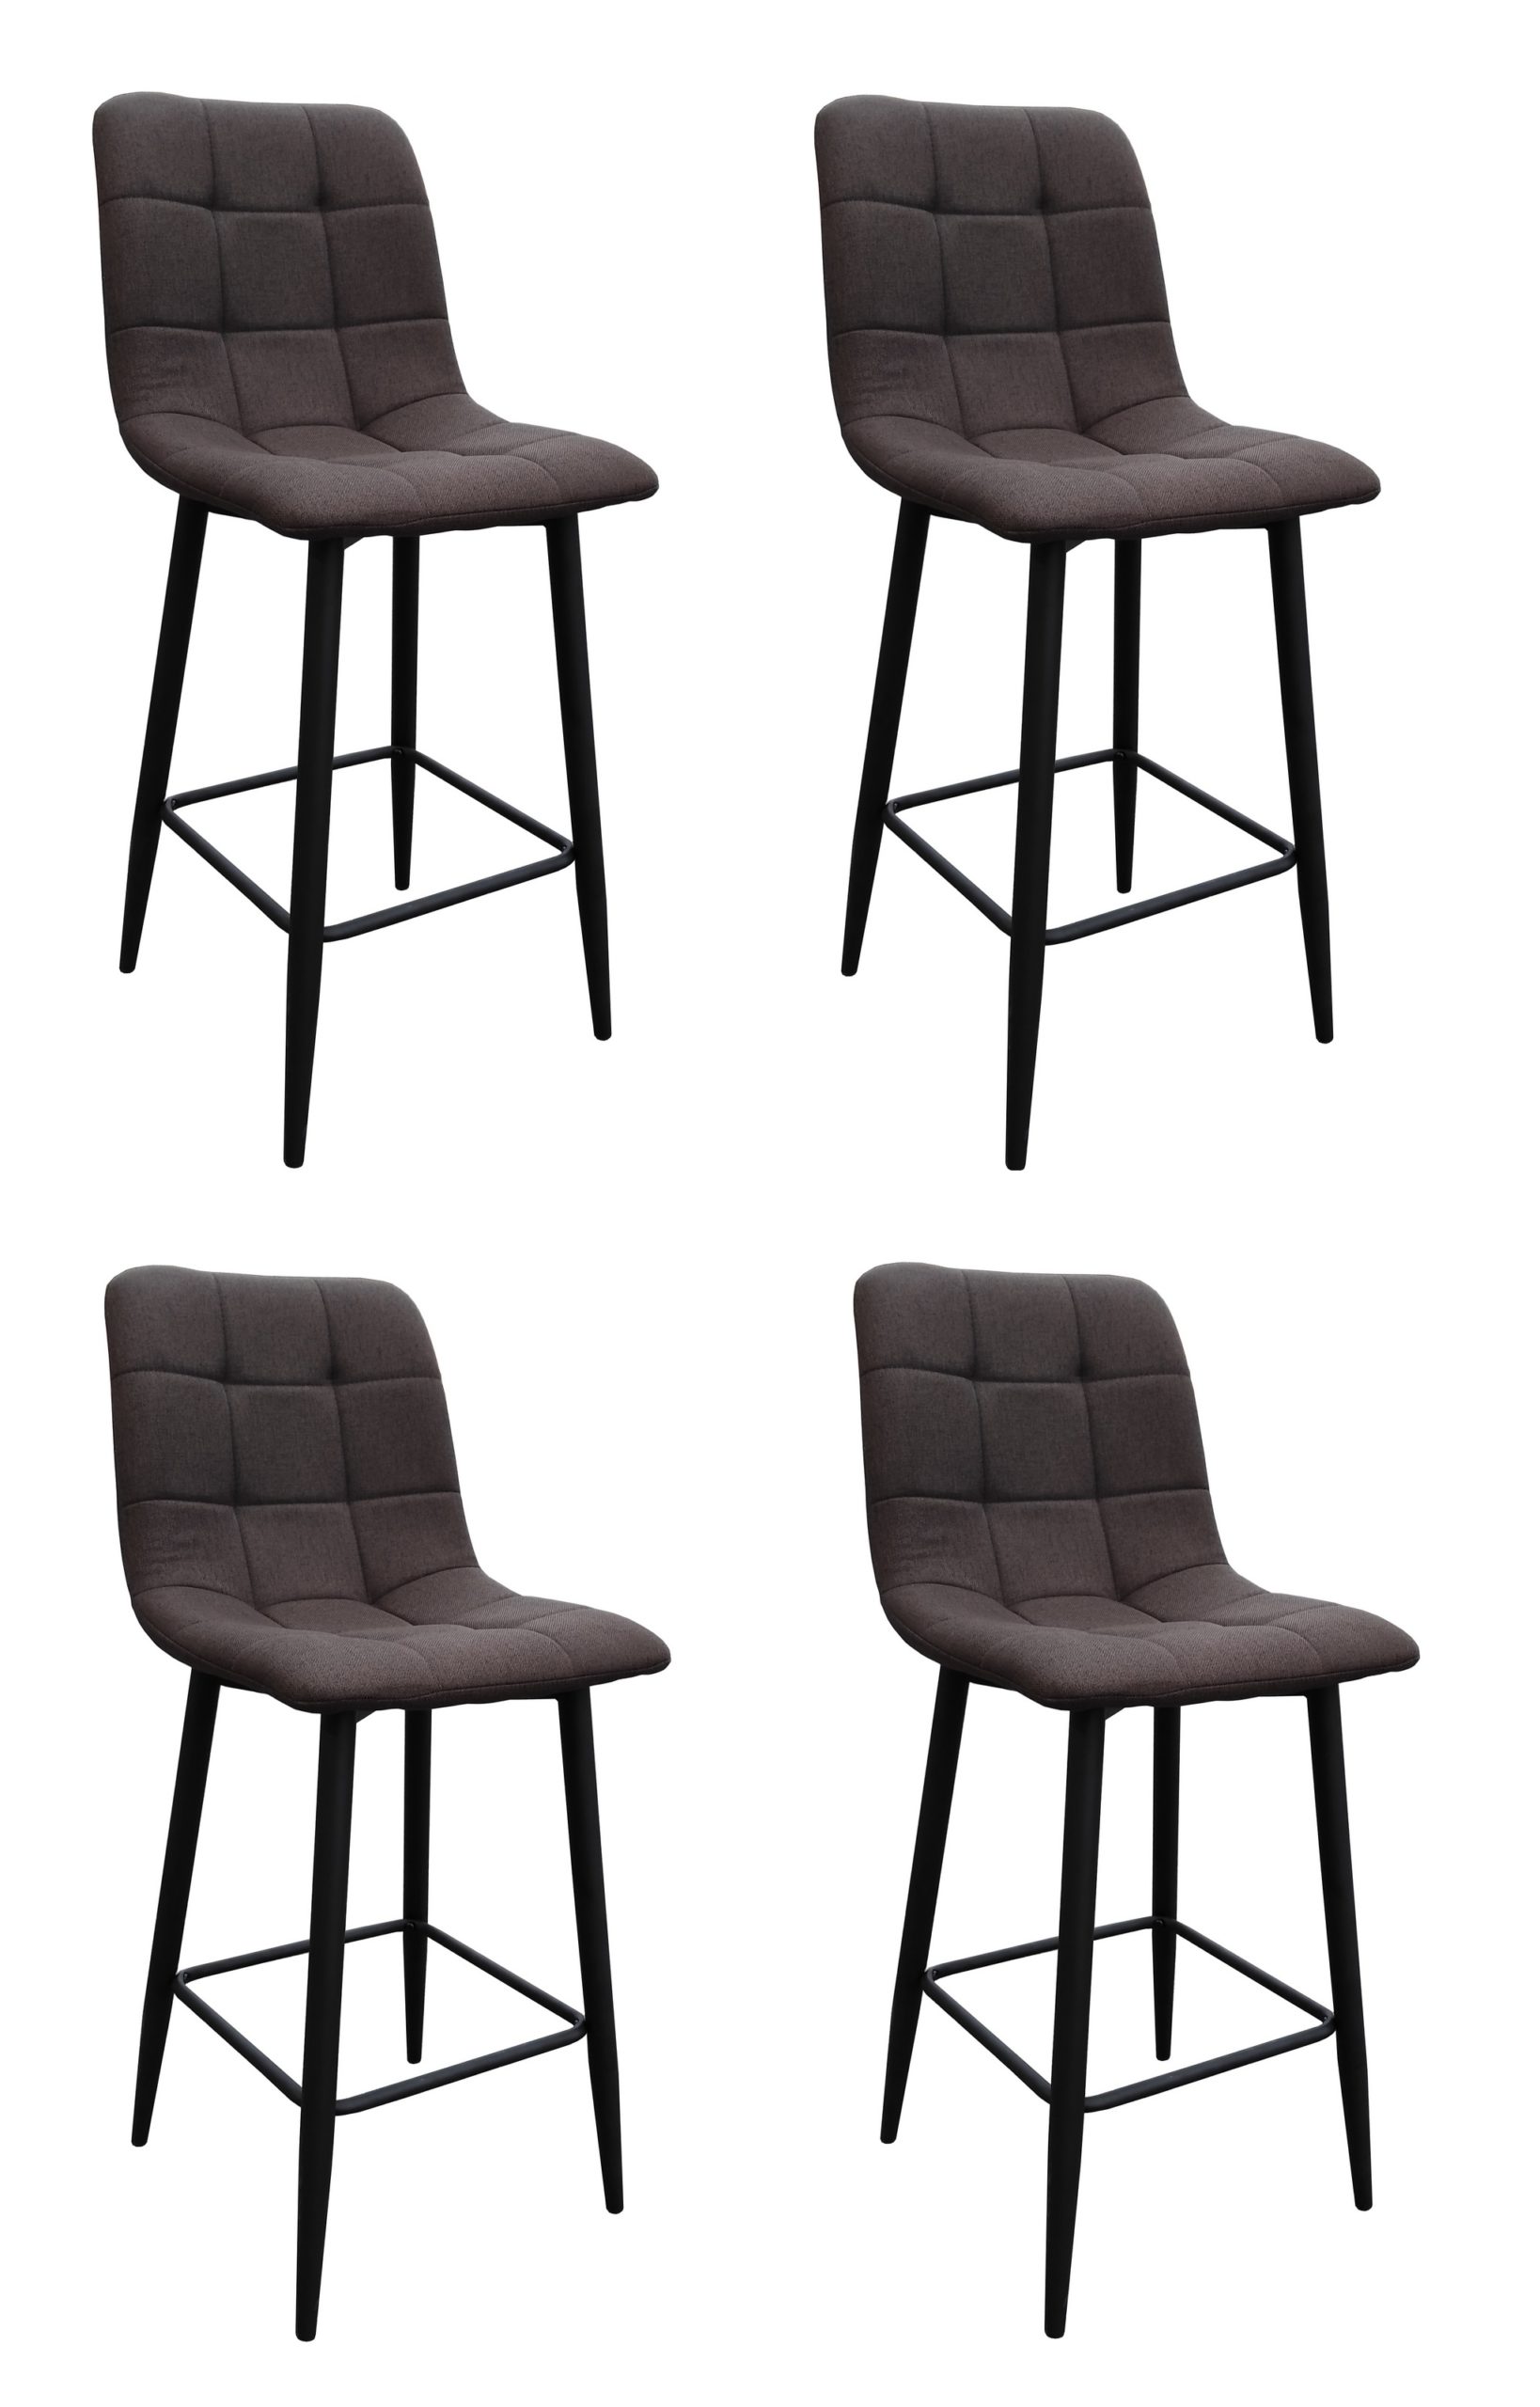 Комплект полубарных стульев 4 шт. Терминал BARNY brown 07, черный/коричневый